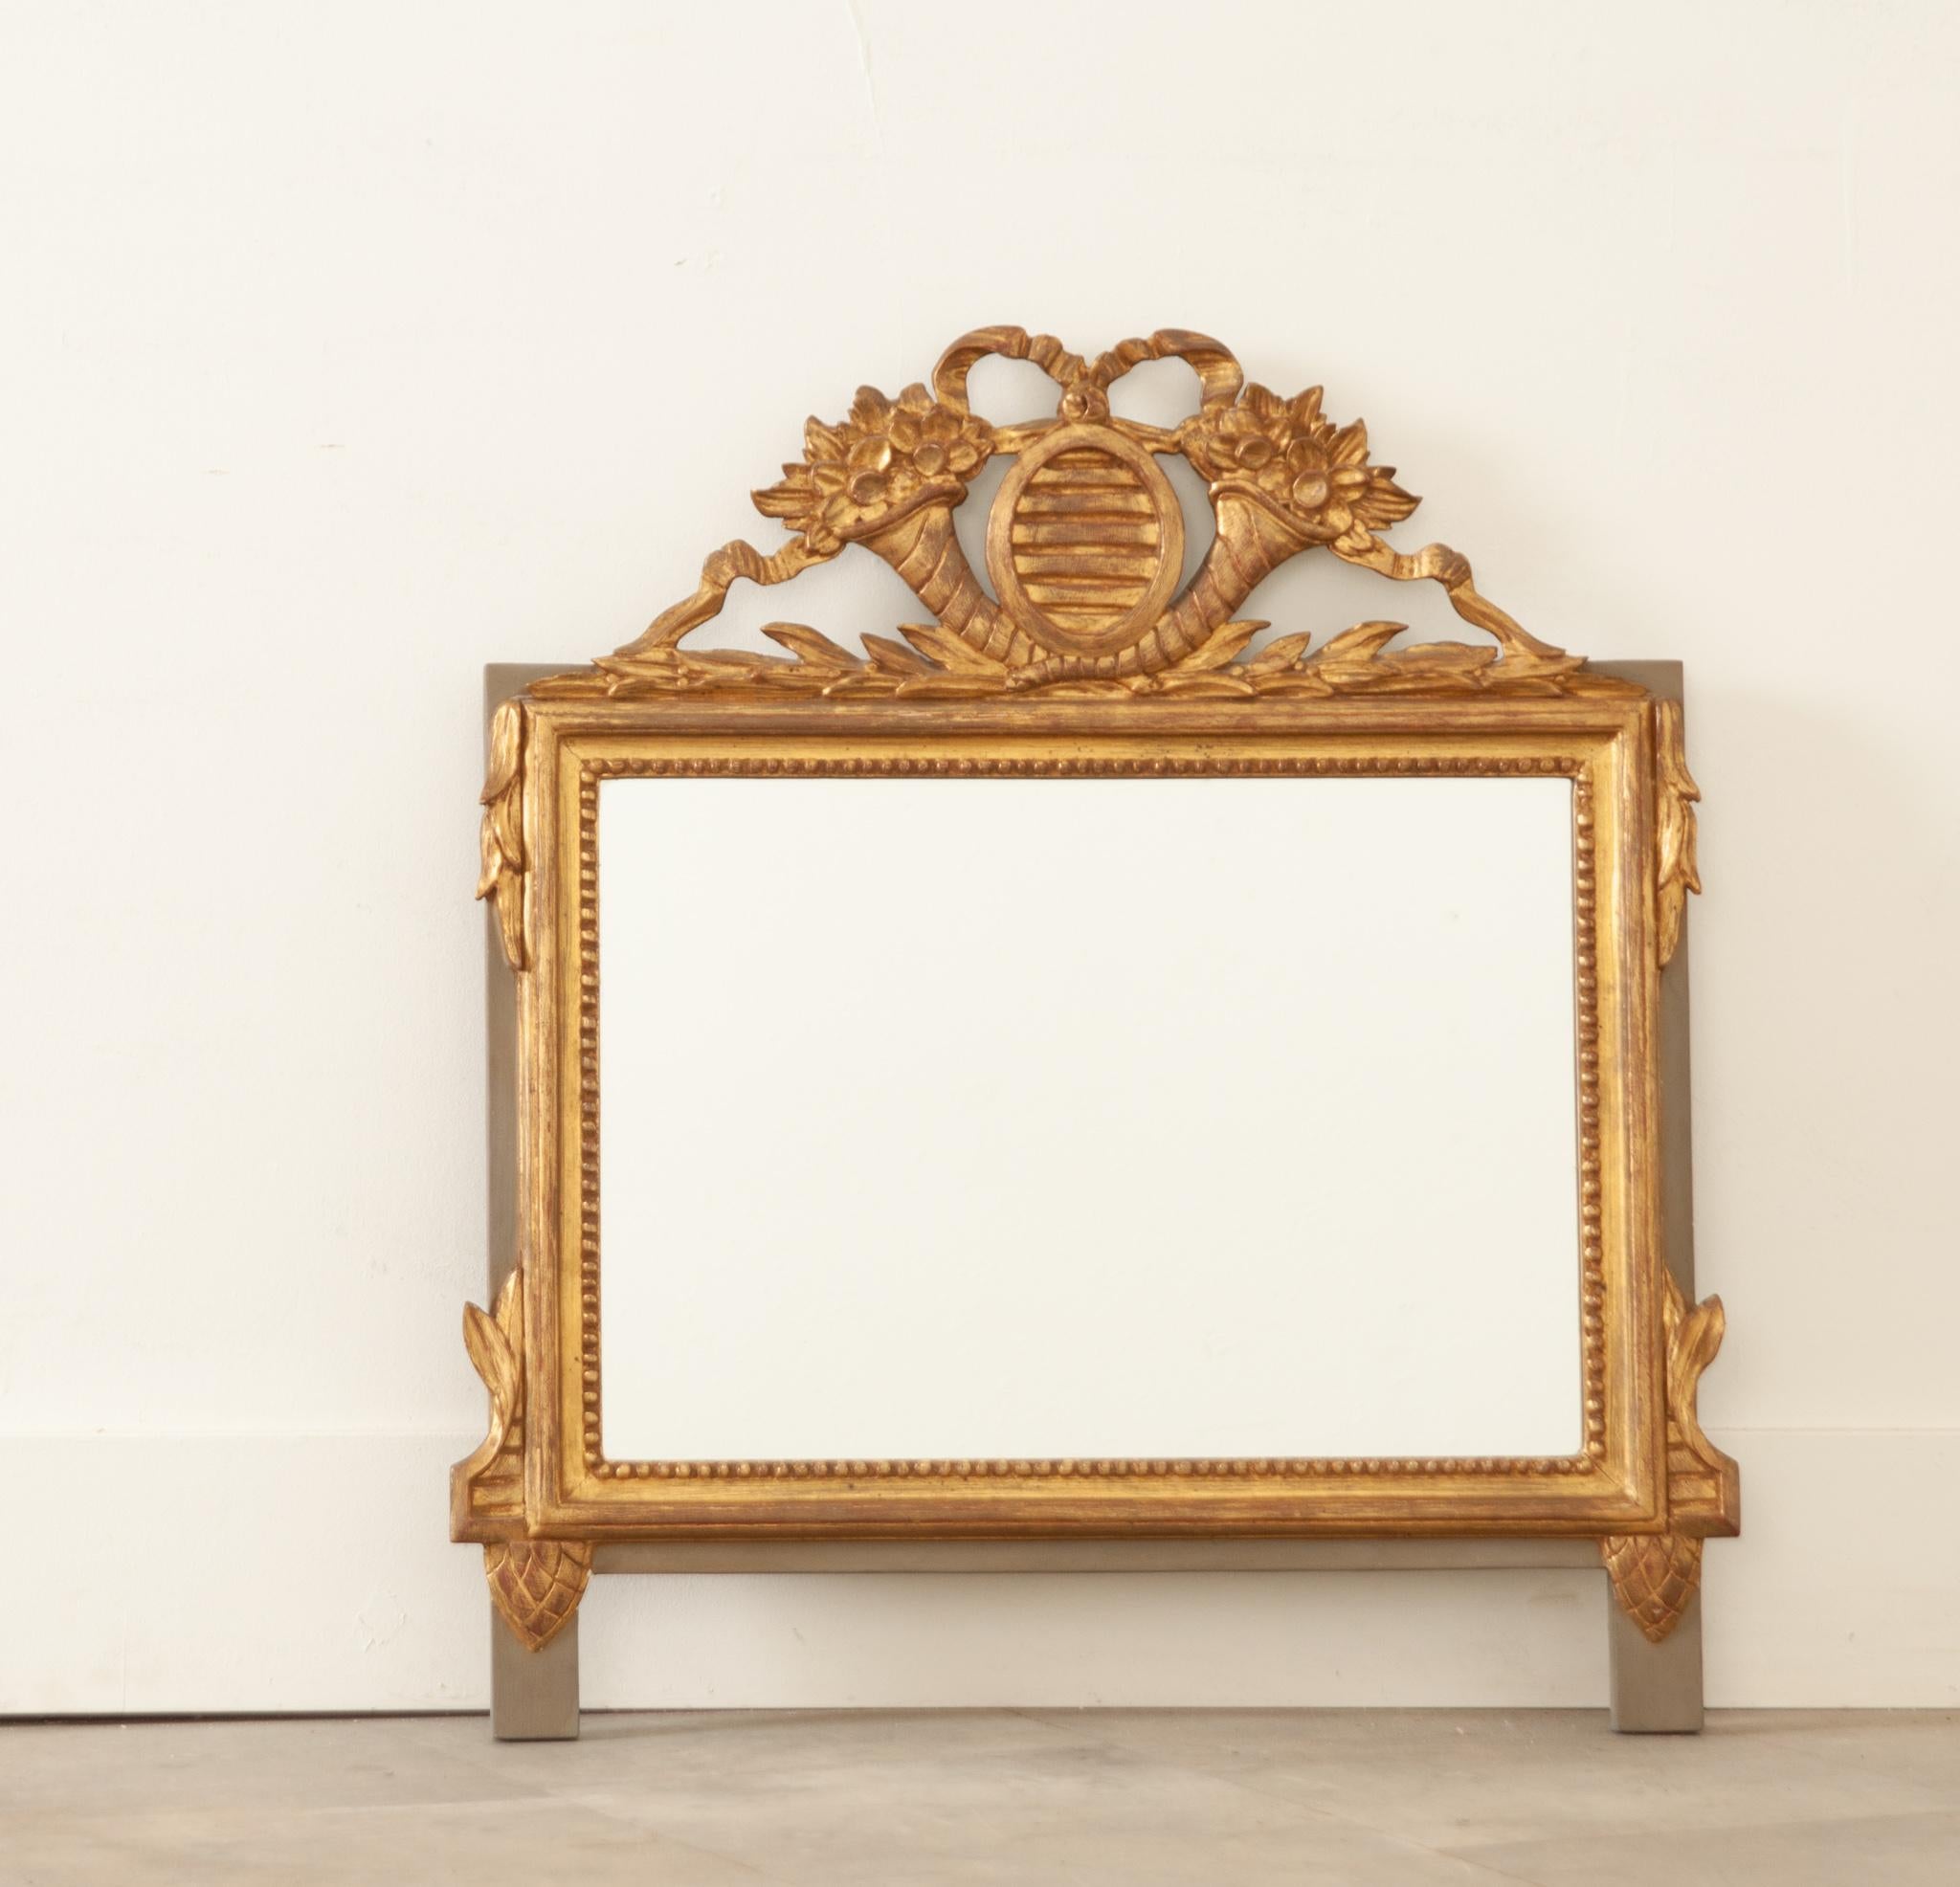 Ein hübscher vergoldeter Spiegel im Louis-XVI-Stil aus Frankreich, der in den 1870er Jahren hergestellt wurde. Ein geschnitztes Wappen mit Blumenbouquets und geschwungenem Band sitzt oben auf dem Rahmen und hat seine ursprüngliche glänzende Wanter